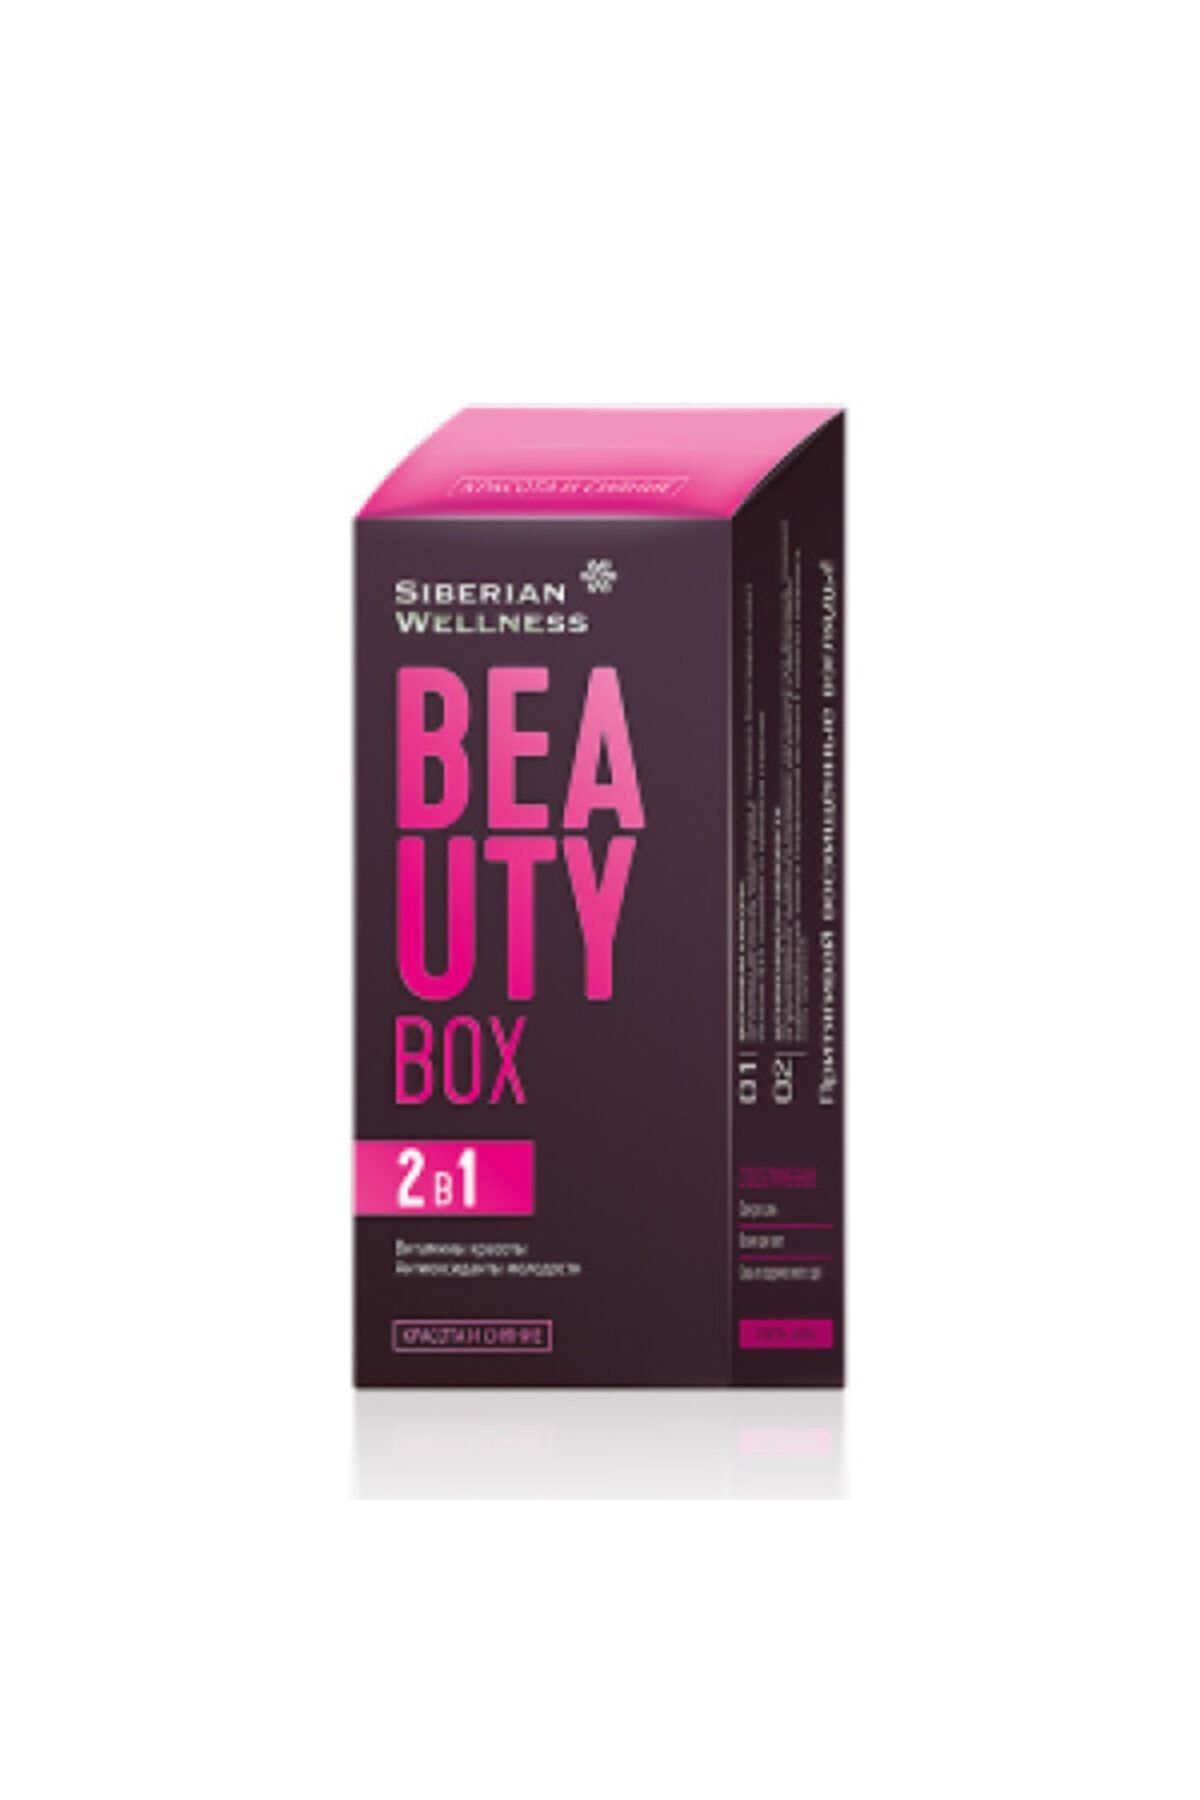 Siberian Wellness Beauty Box-saç-tırnak-cilt Bakımı Için Teg-bağışıklık Güçlendirici-12 Vitamin Ve Q10 Içerir